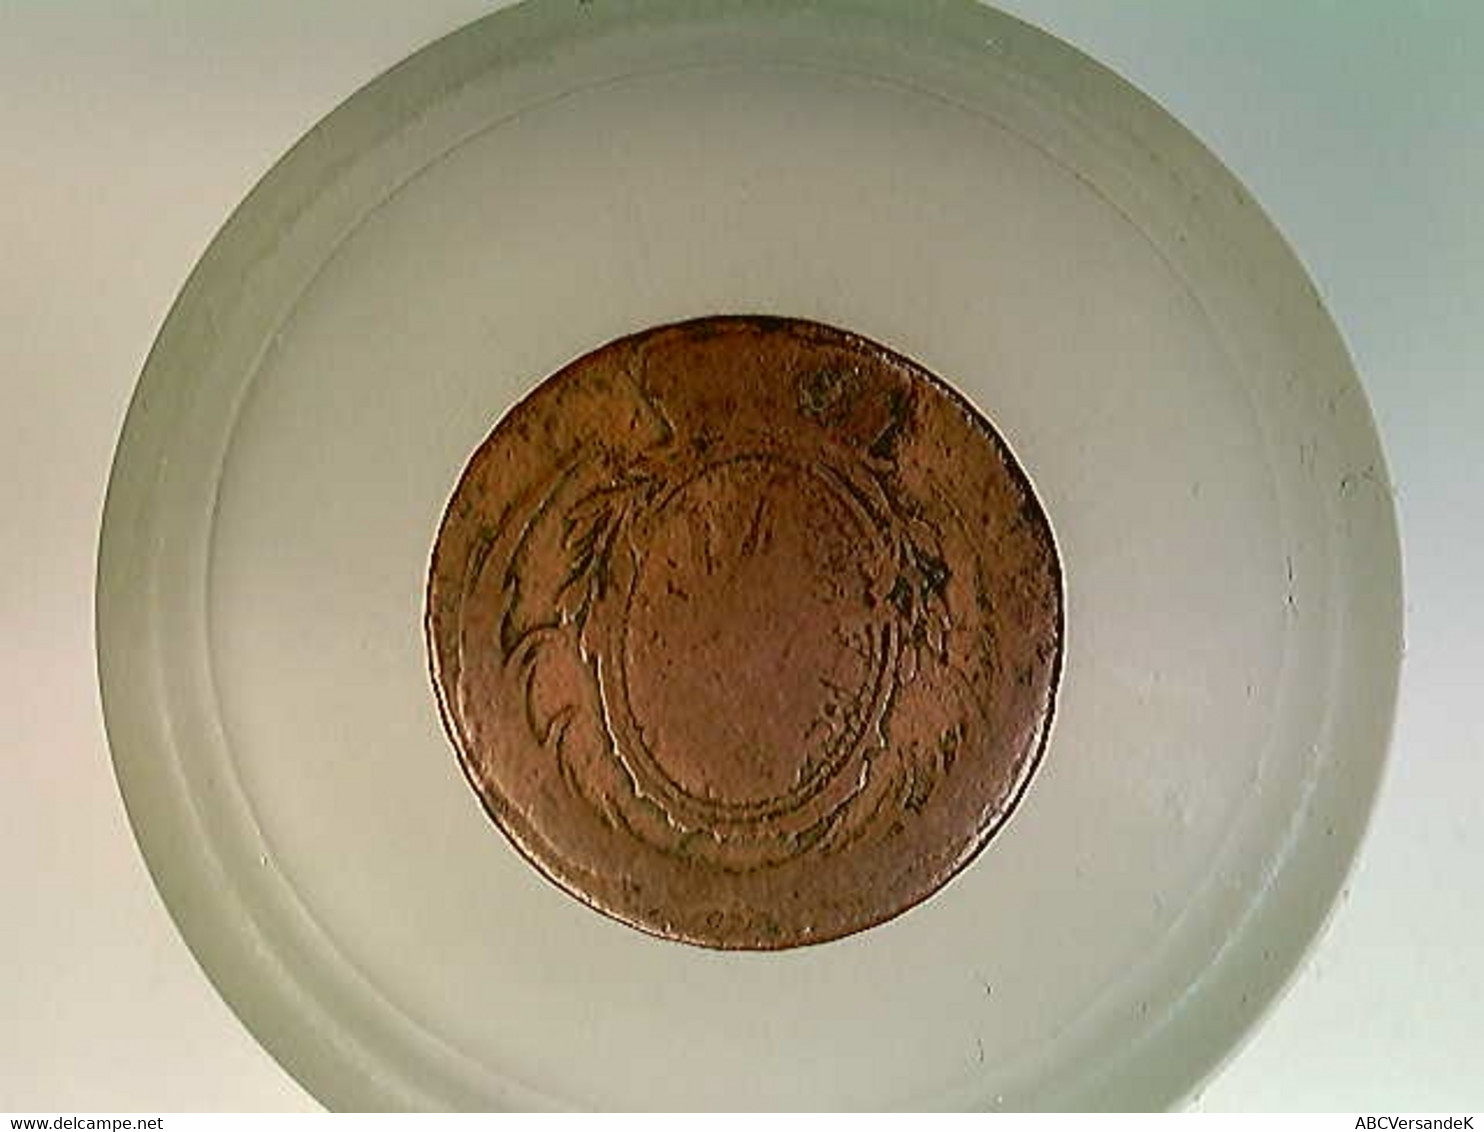 Münze, 3 Pfennige, 1803, Sachsen - Numismatics